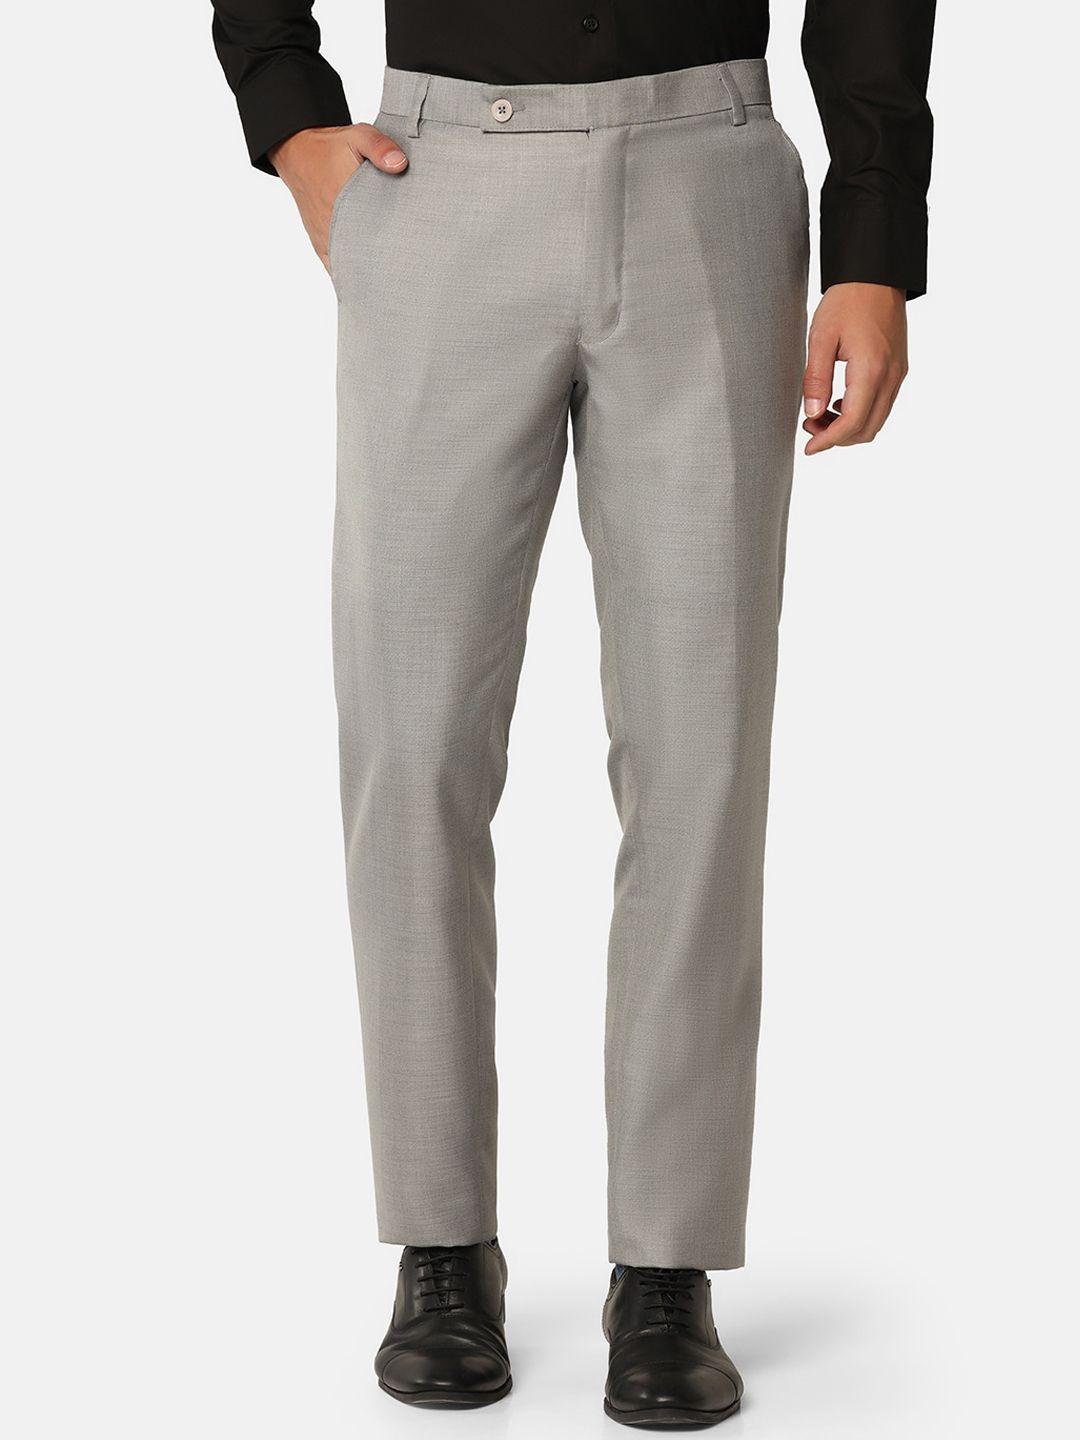 tahvo-men-comfort-slim-fit-formal-trousers